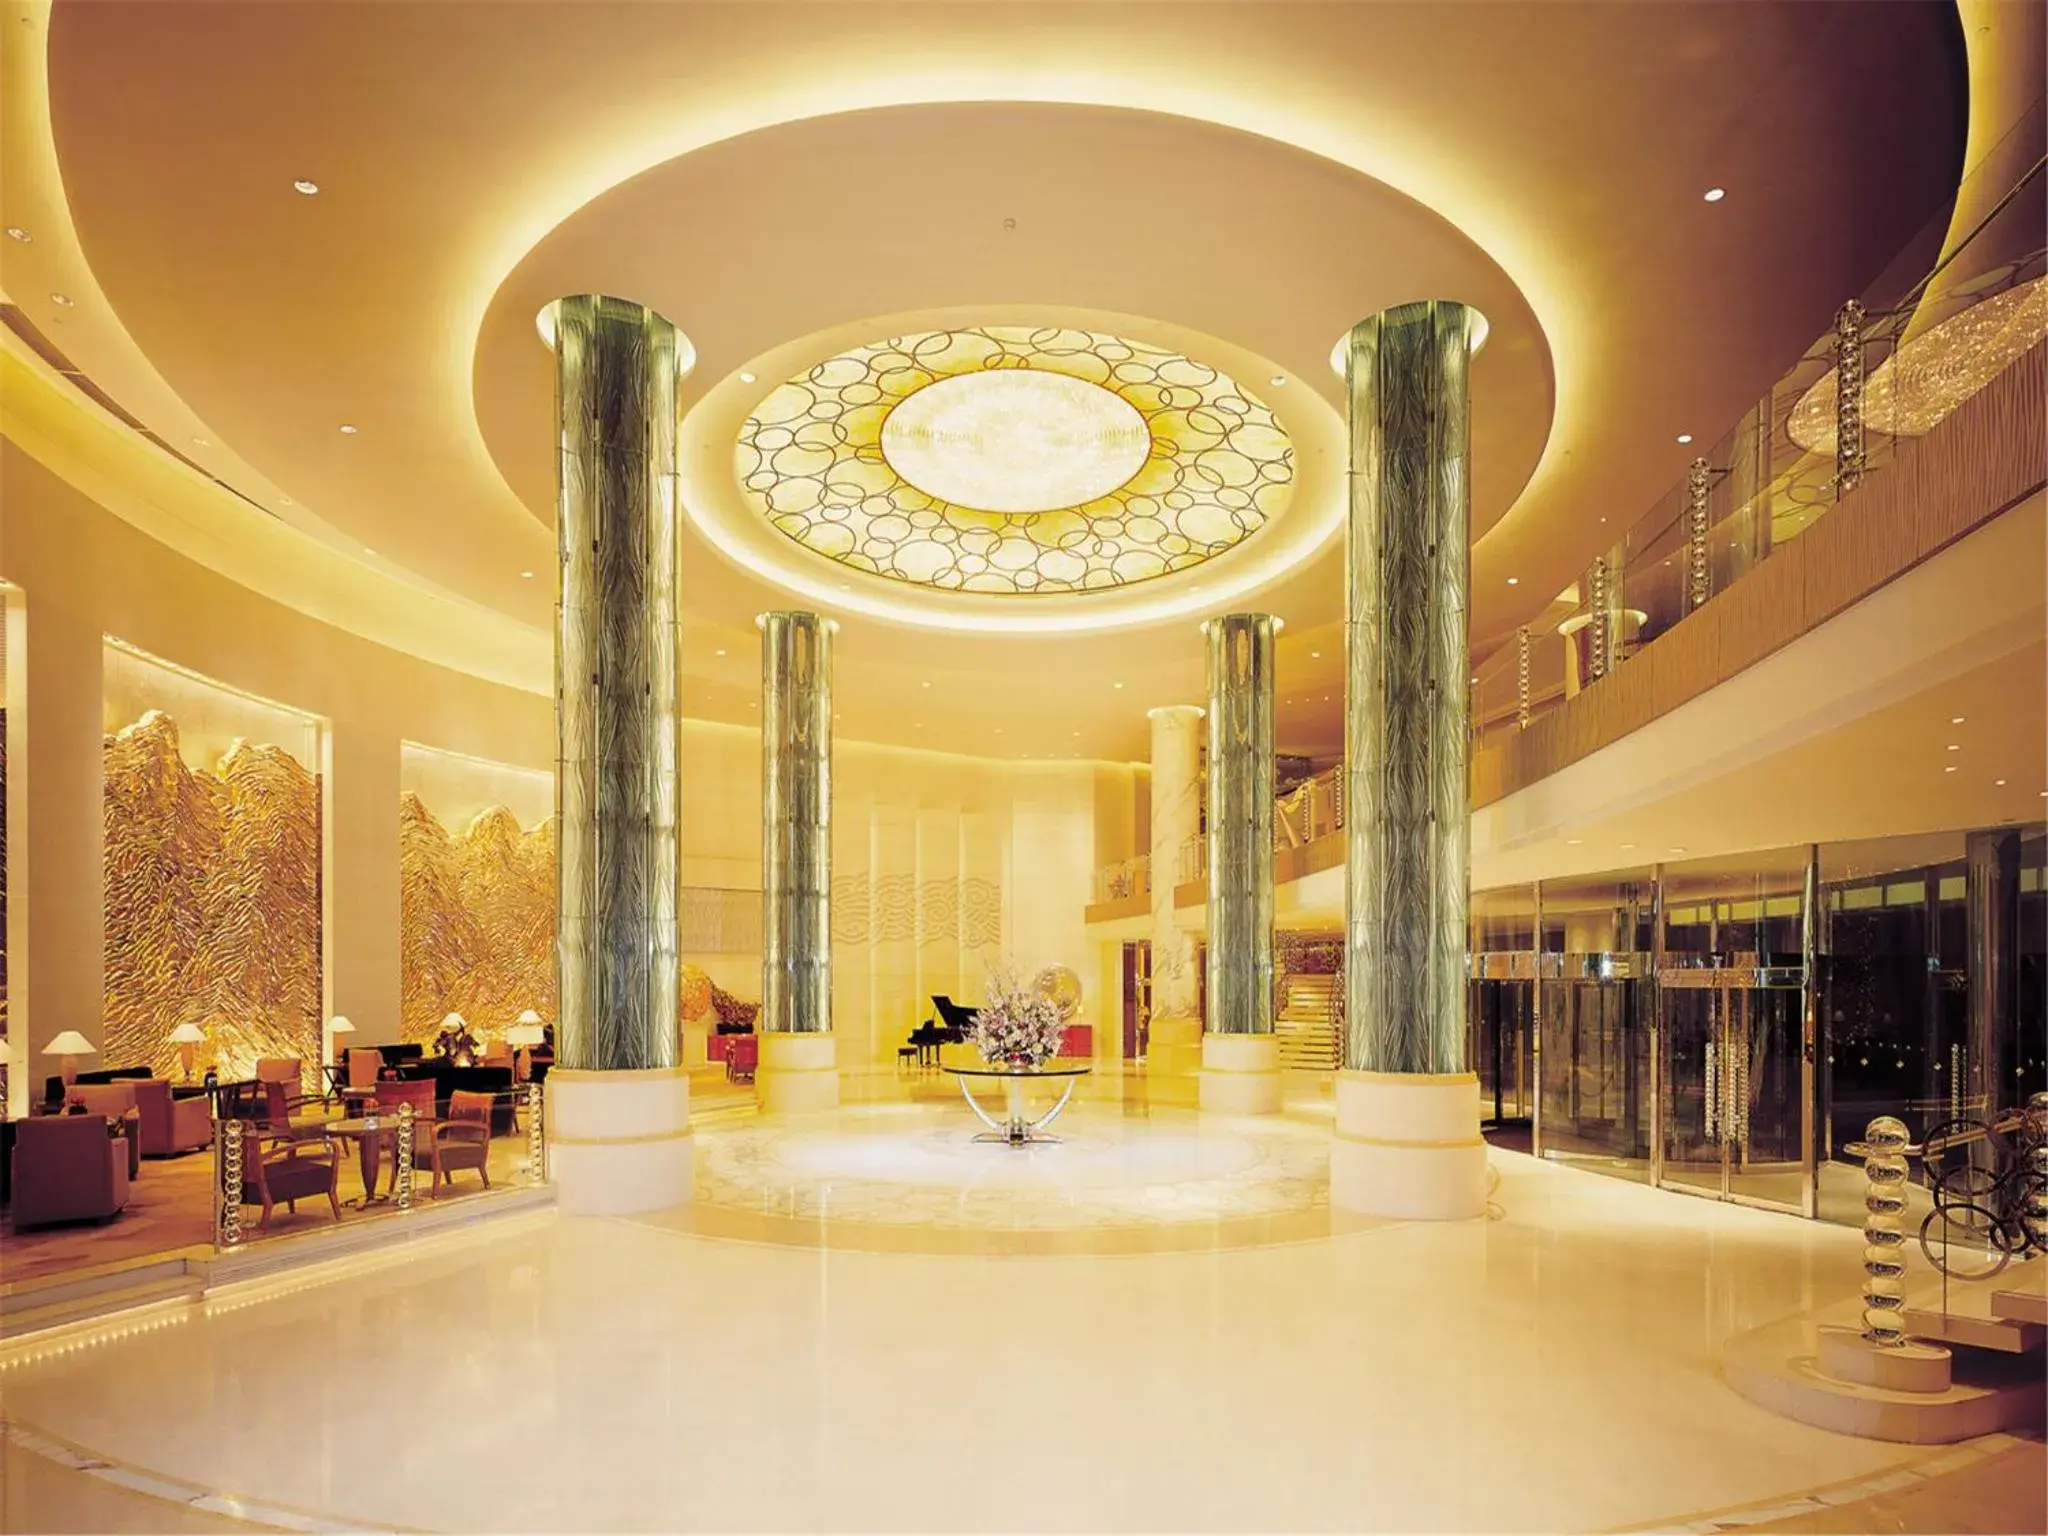 Lobby or reception, Lobby/Reception in Hotel Kunlun